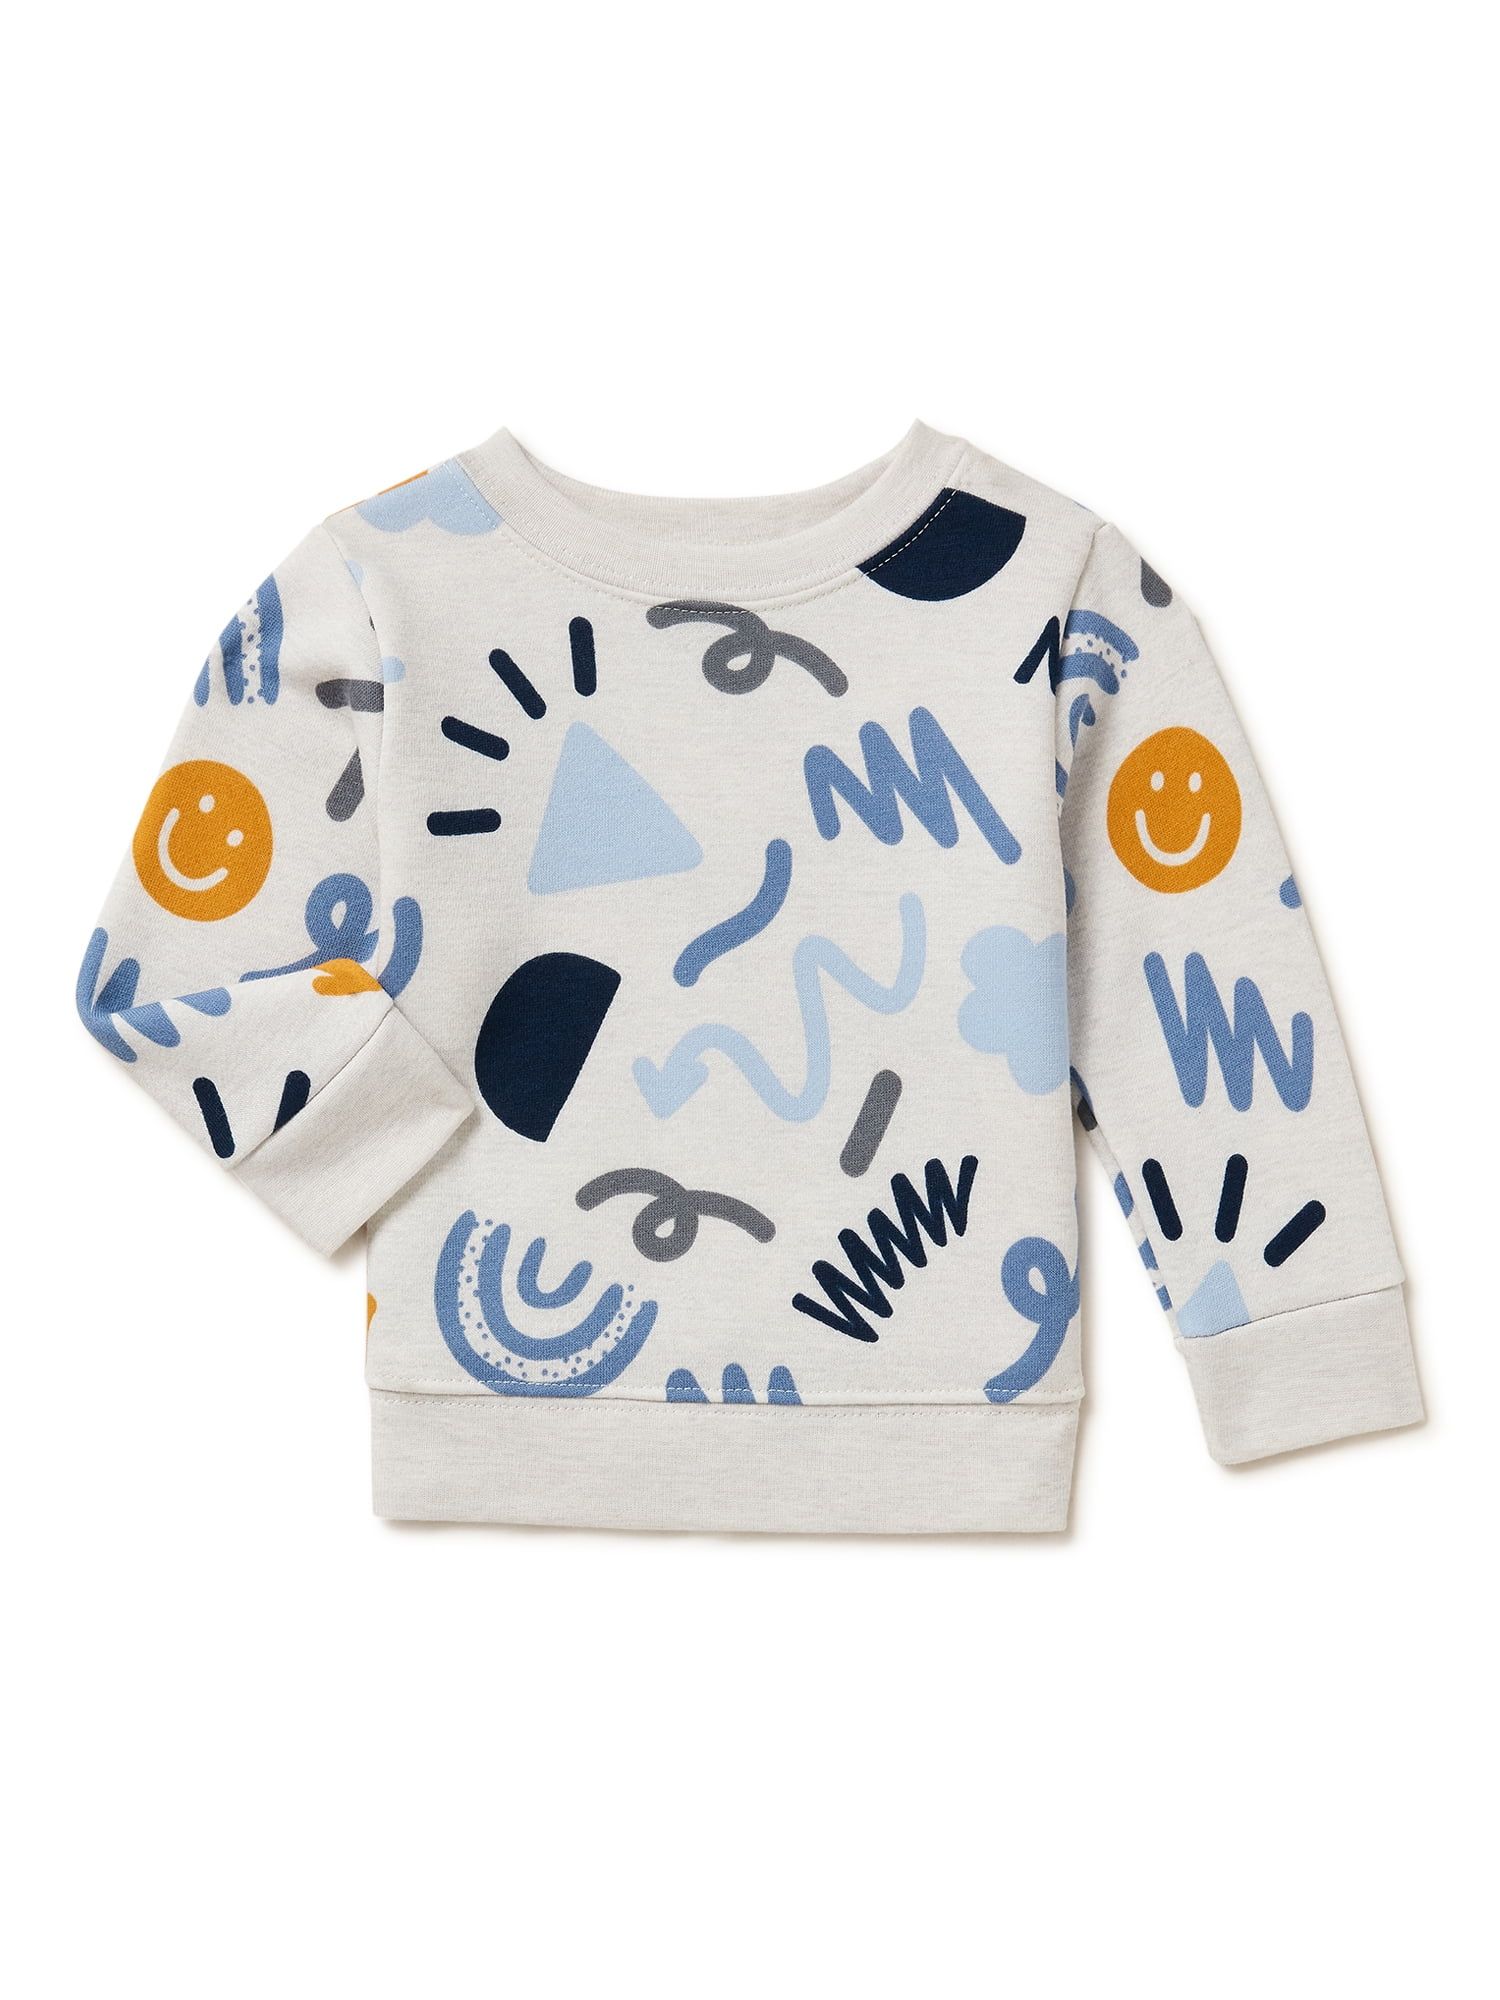 Garanimals Baby Boys Print Fleece Sweatshirt, Sizes 6 Months-24 Months | Walmart (US)